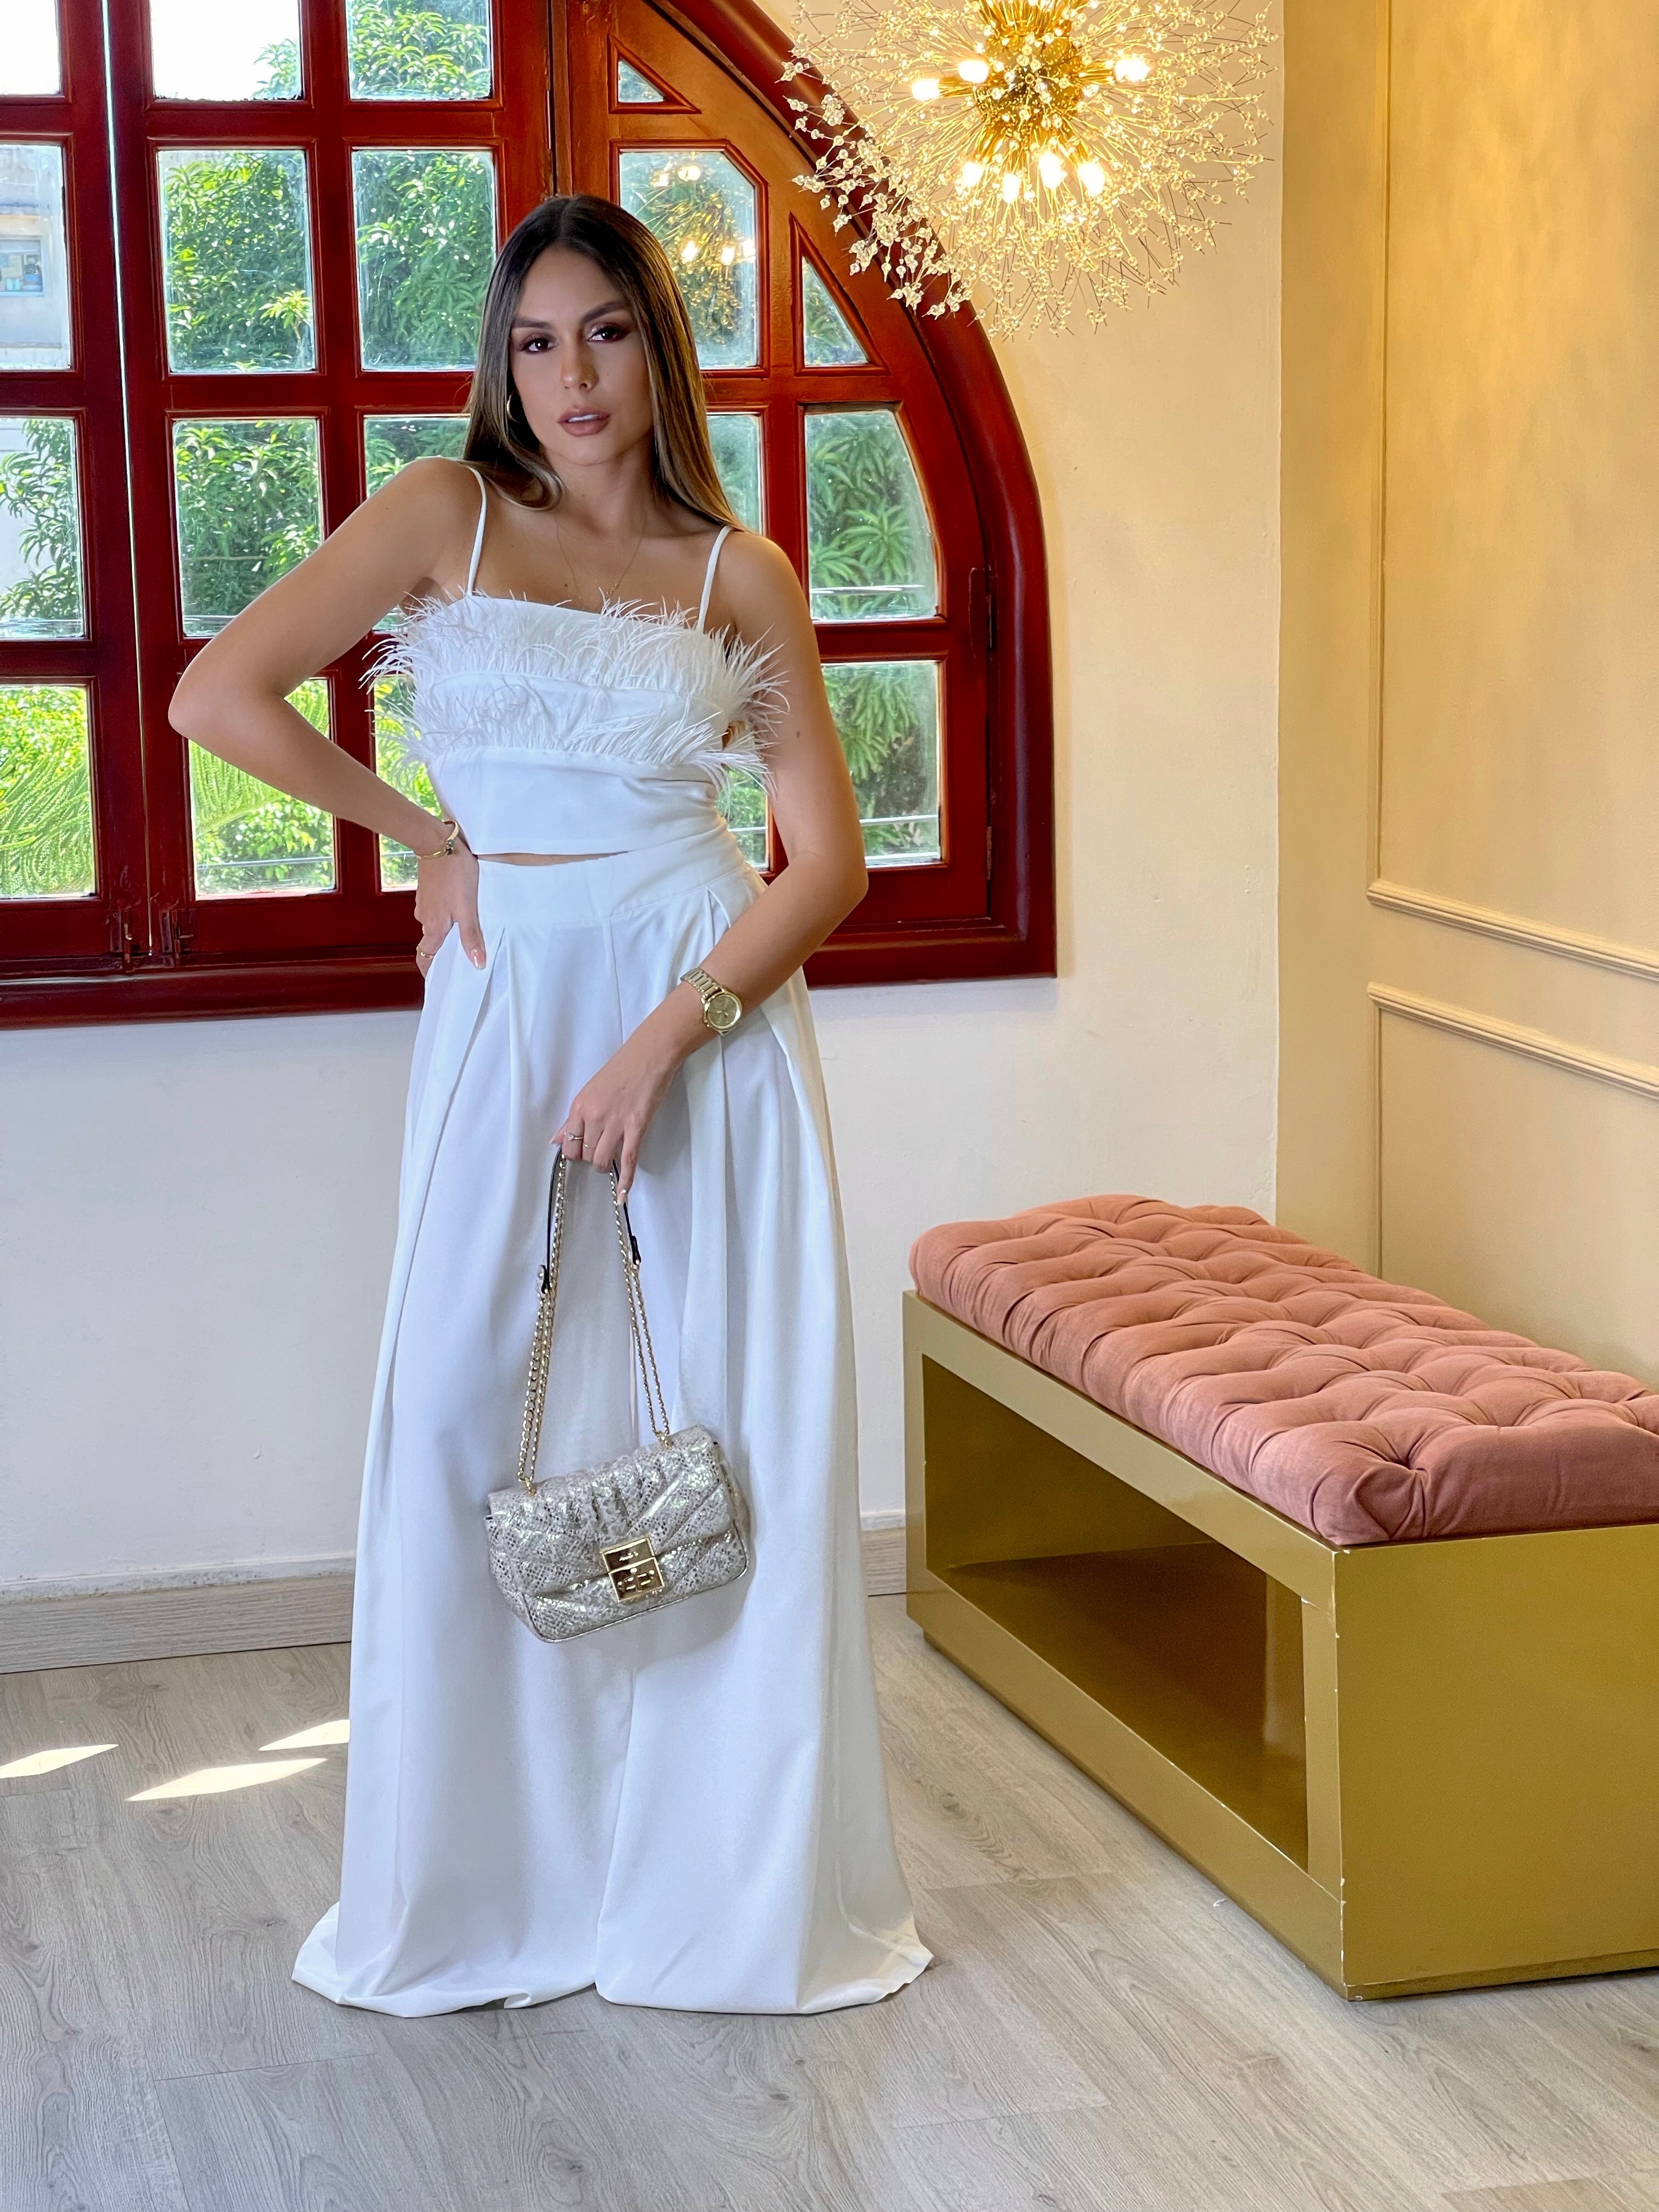 Pantalón palazzo color blanco para mujer, ideal para un look moderno y distinguido.